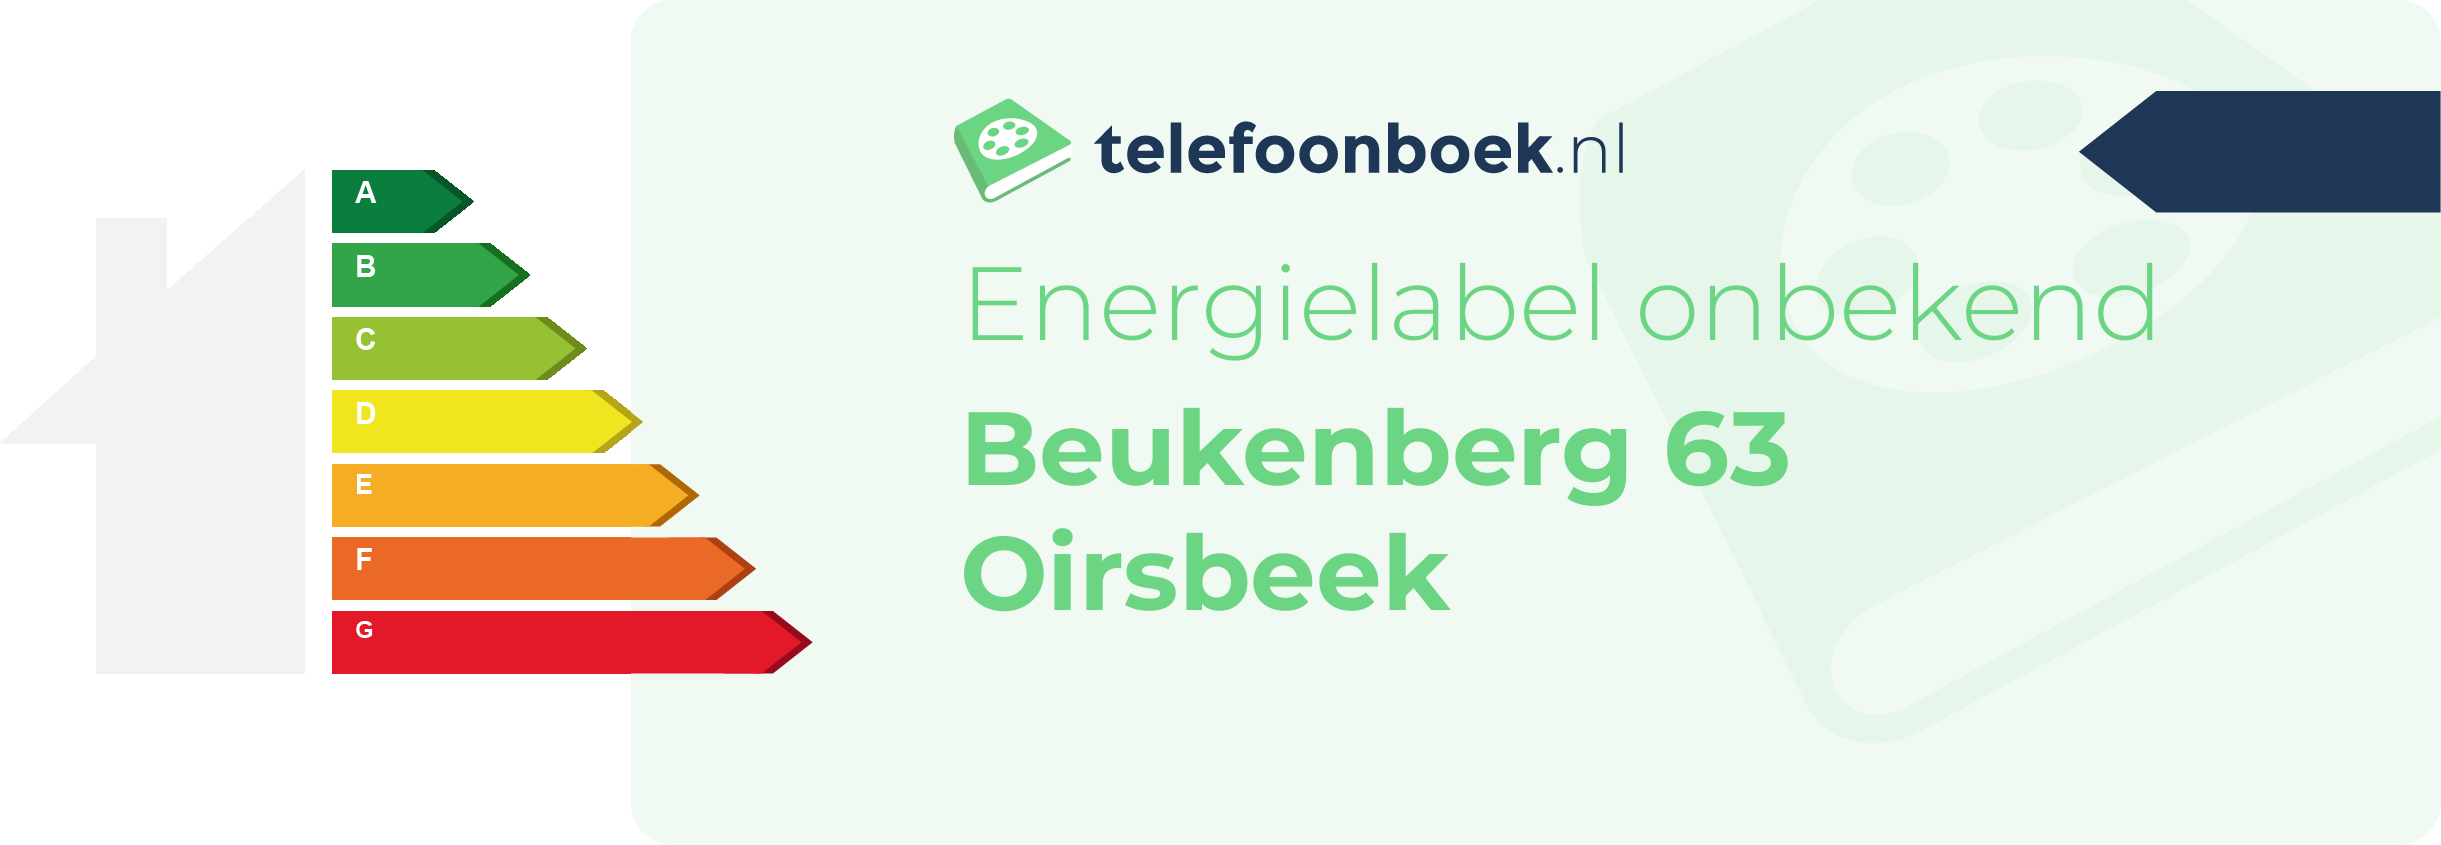 Energielabel Beukenberg 63 Oirsbeek